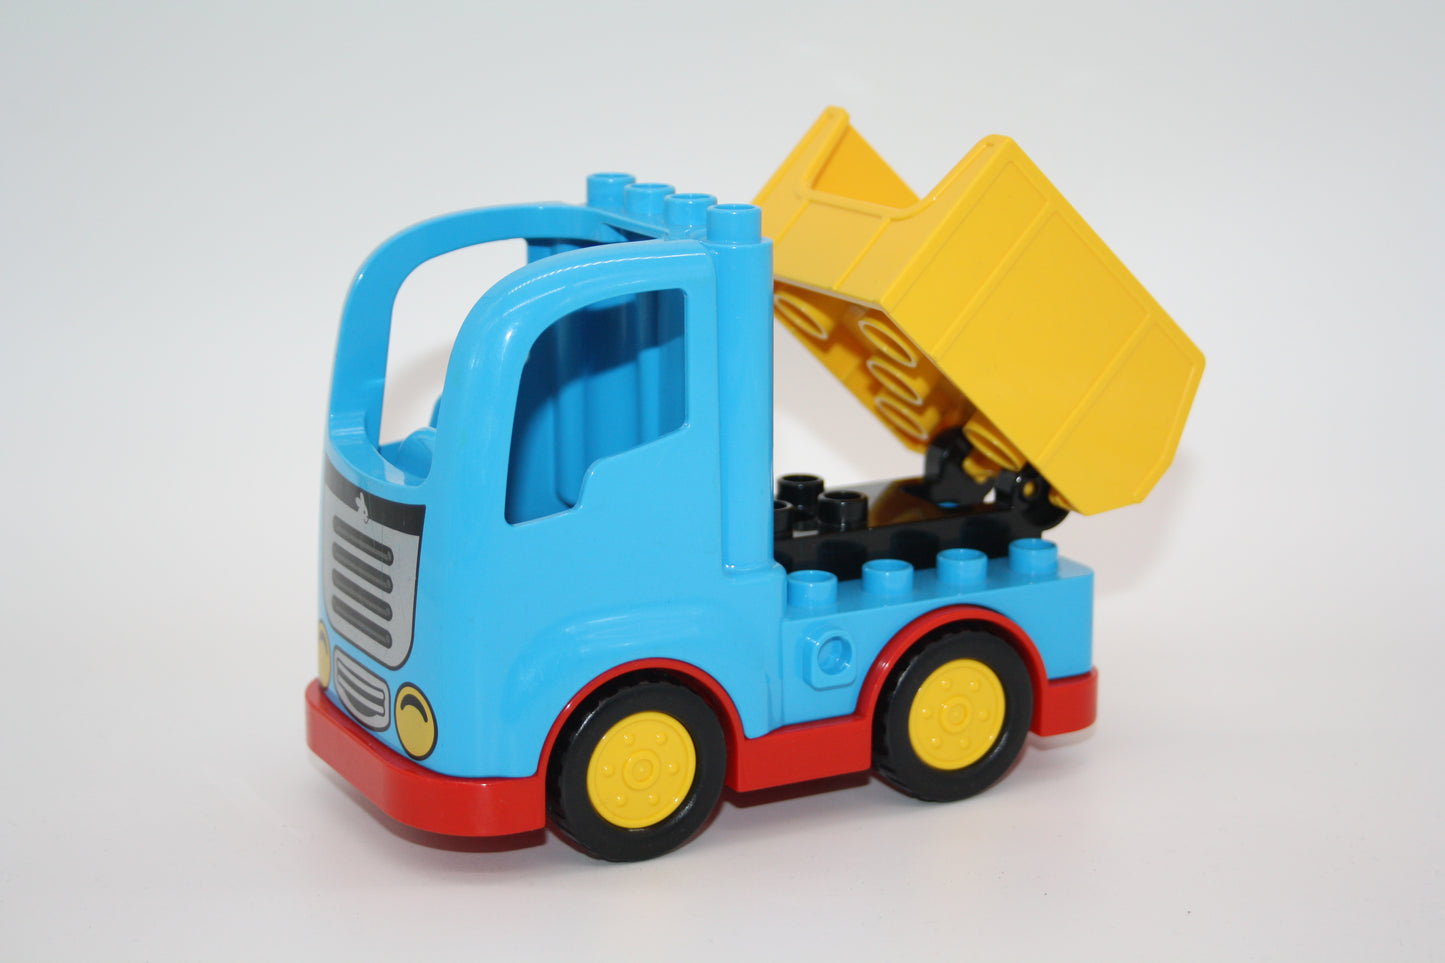 Duplo - Kipplaster m. Funktion - blau/gelb - Baustelle - LKW/Lastwagen - Fahrzeuge